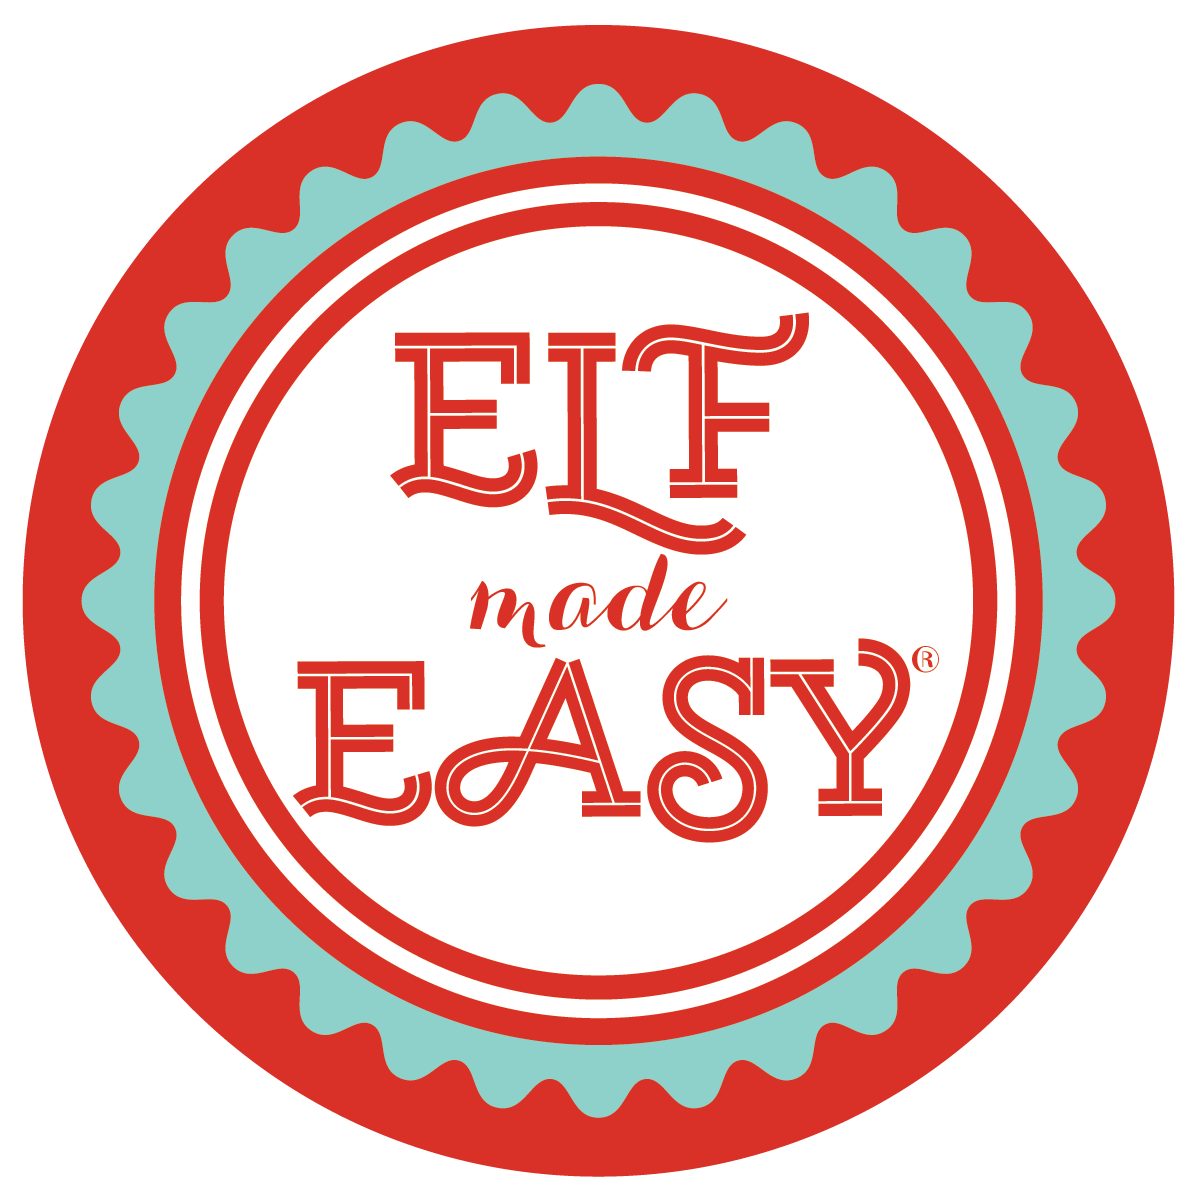 Elf Made Easy